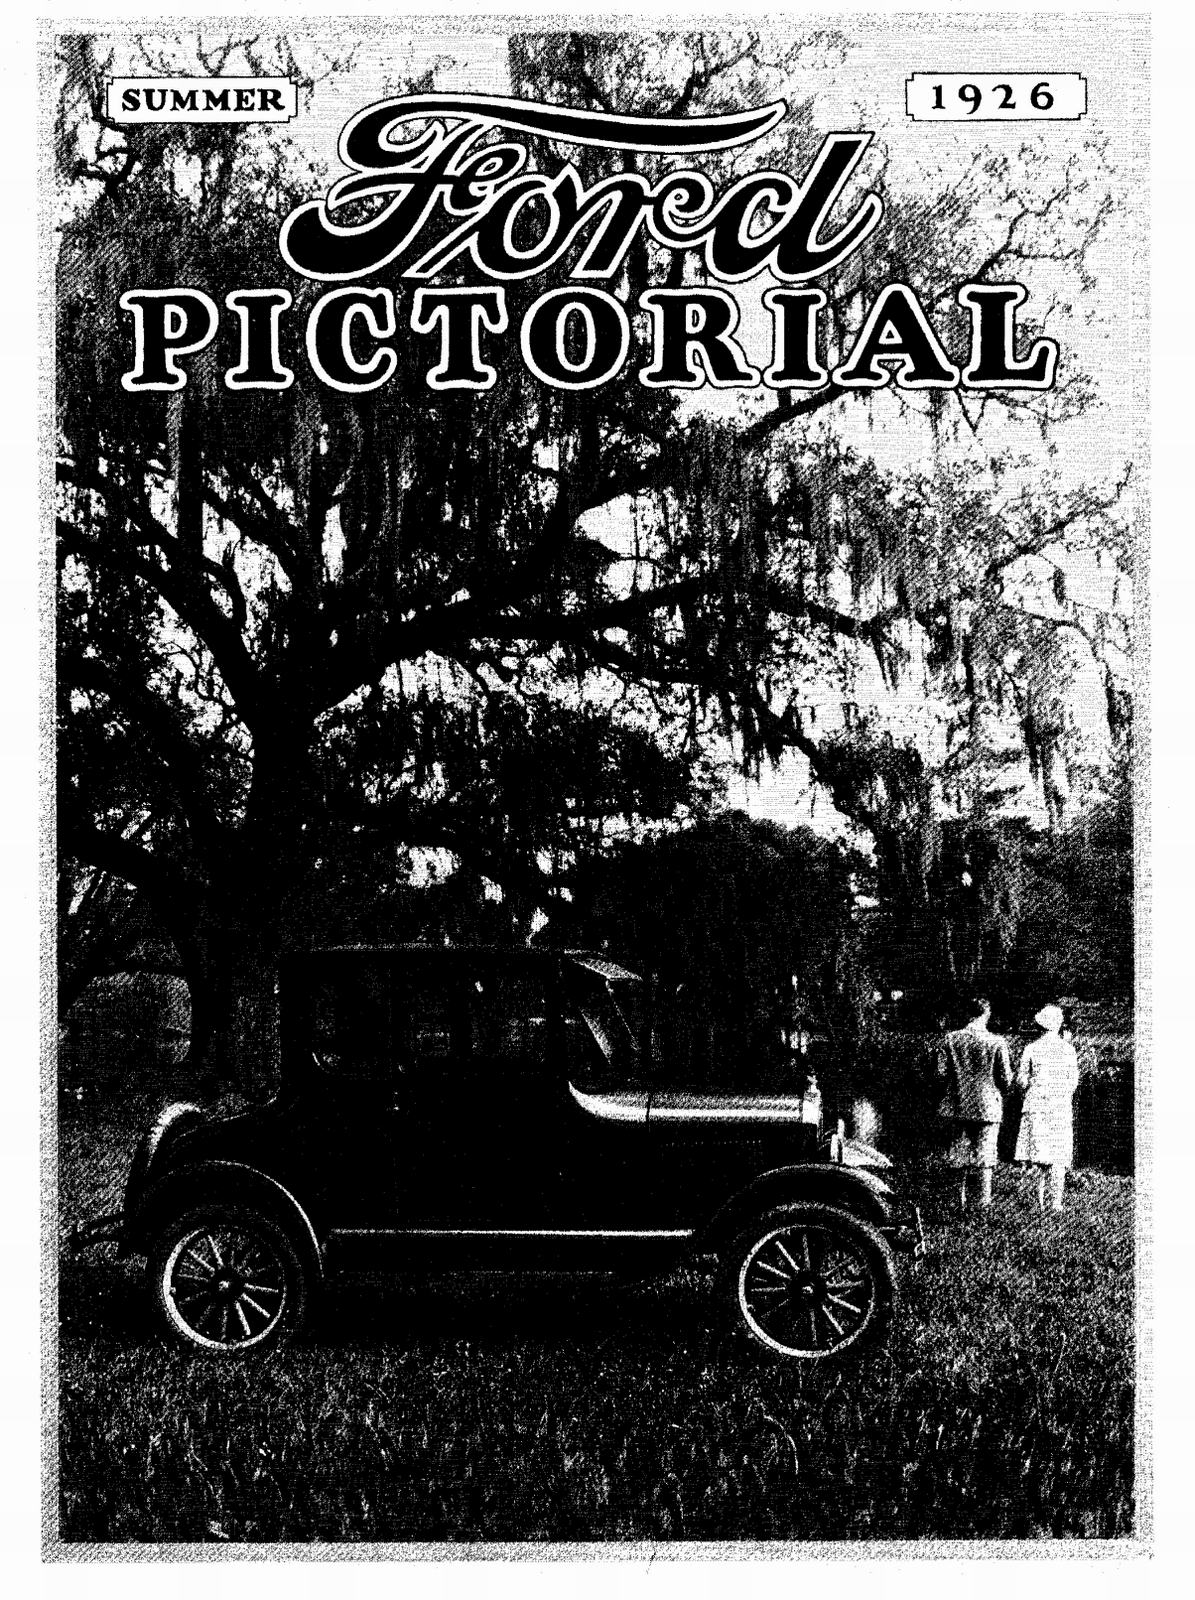 n_1926 Ford Pictorial-03-1.jpg